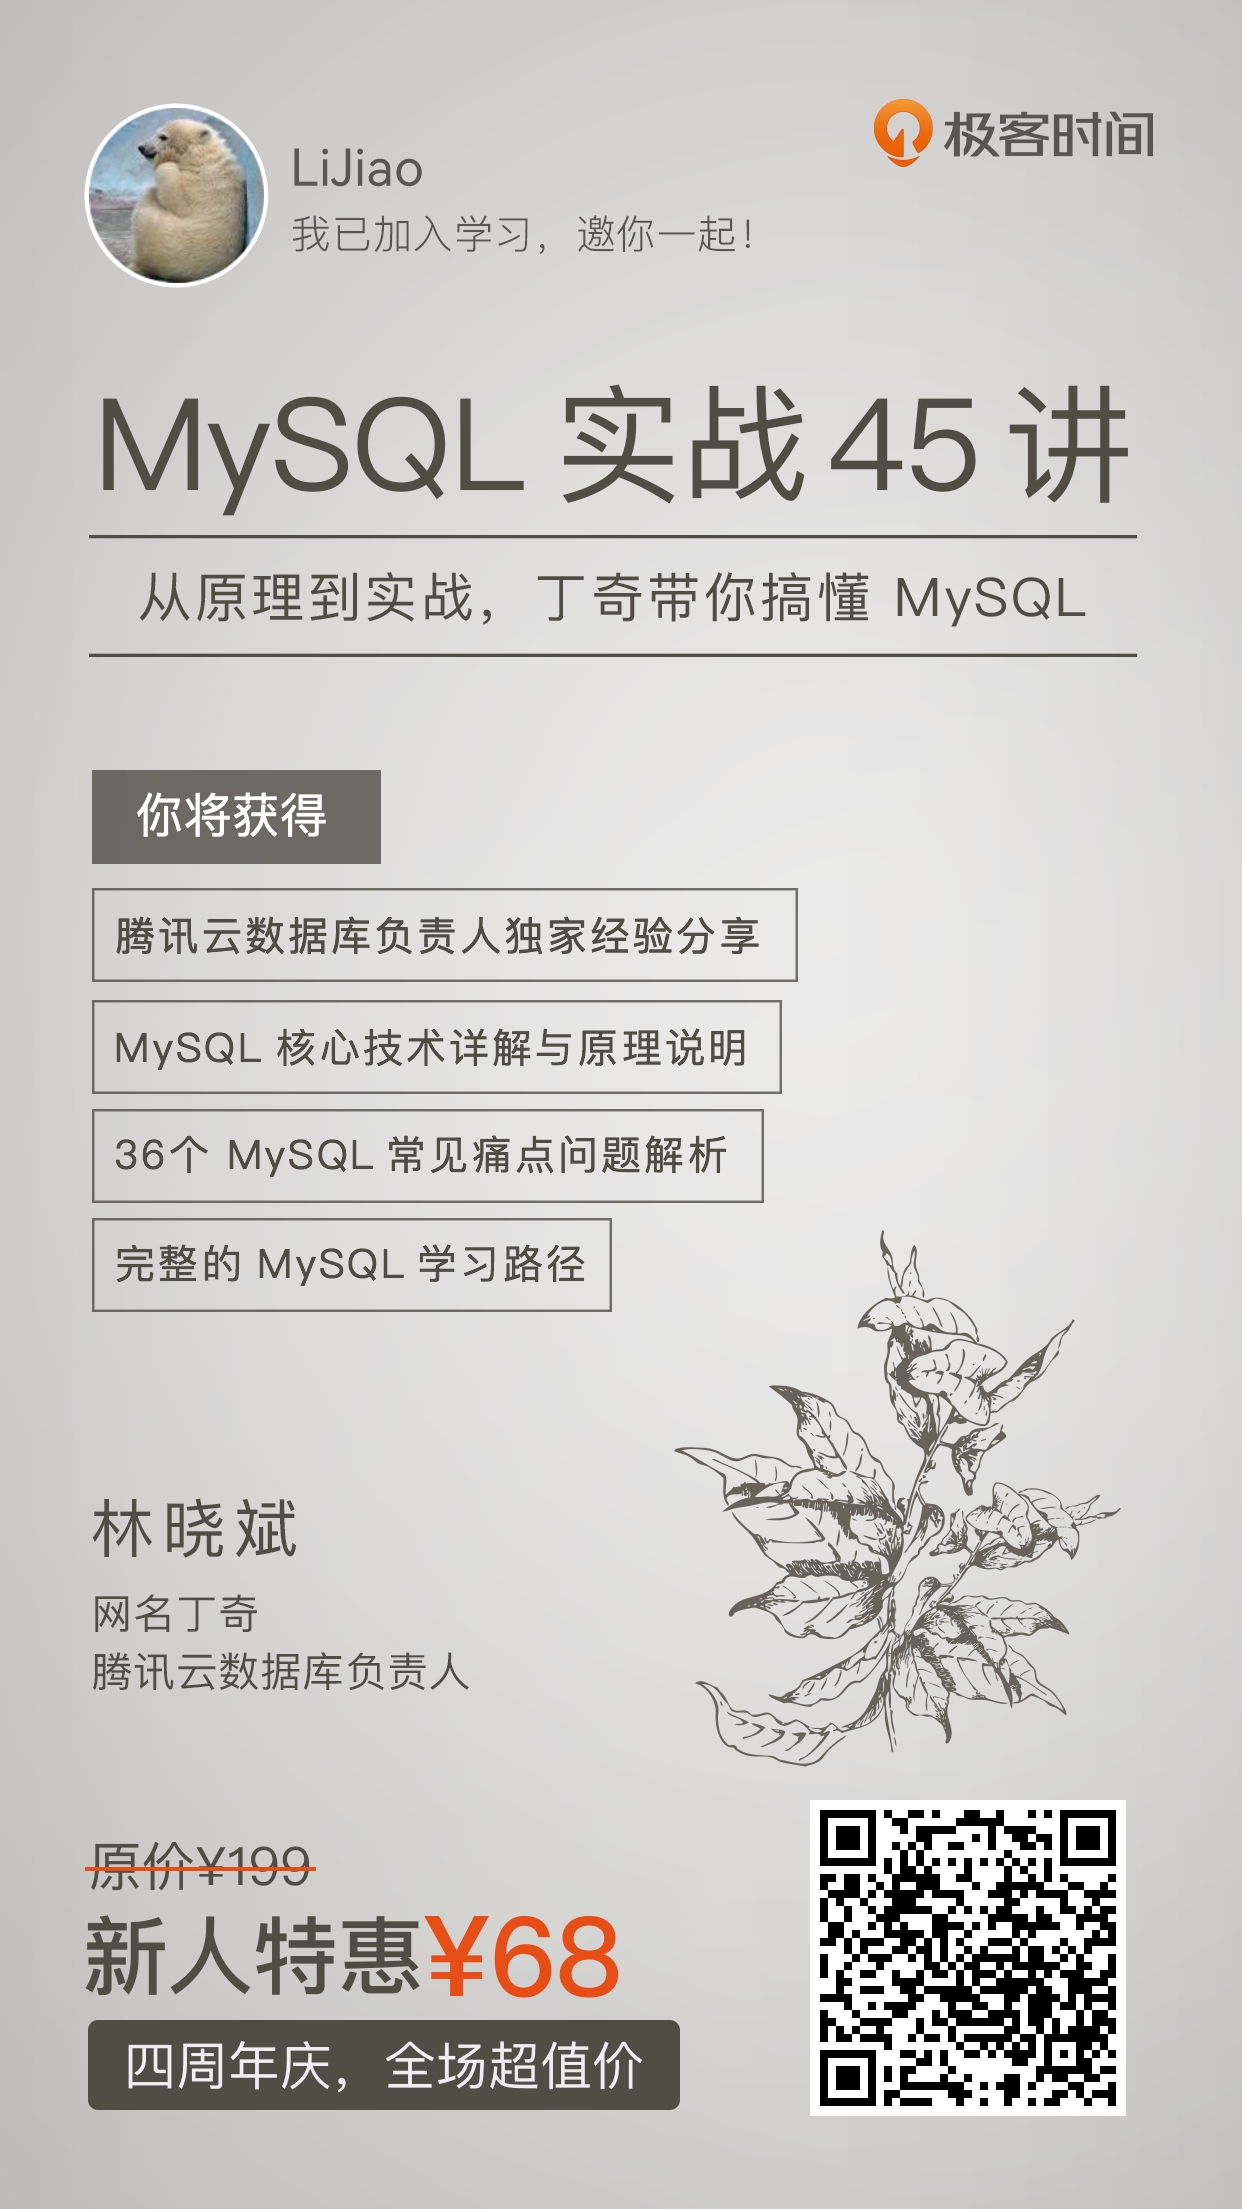 林晓斌《MySQL实战45讲》MySQL深度学习